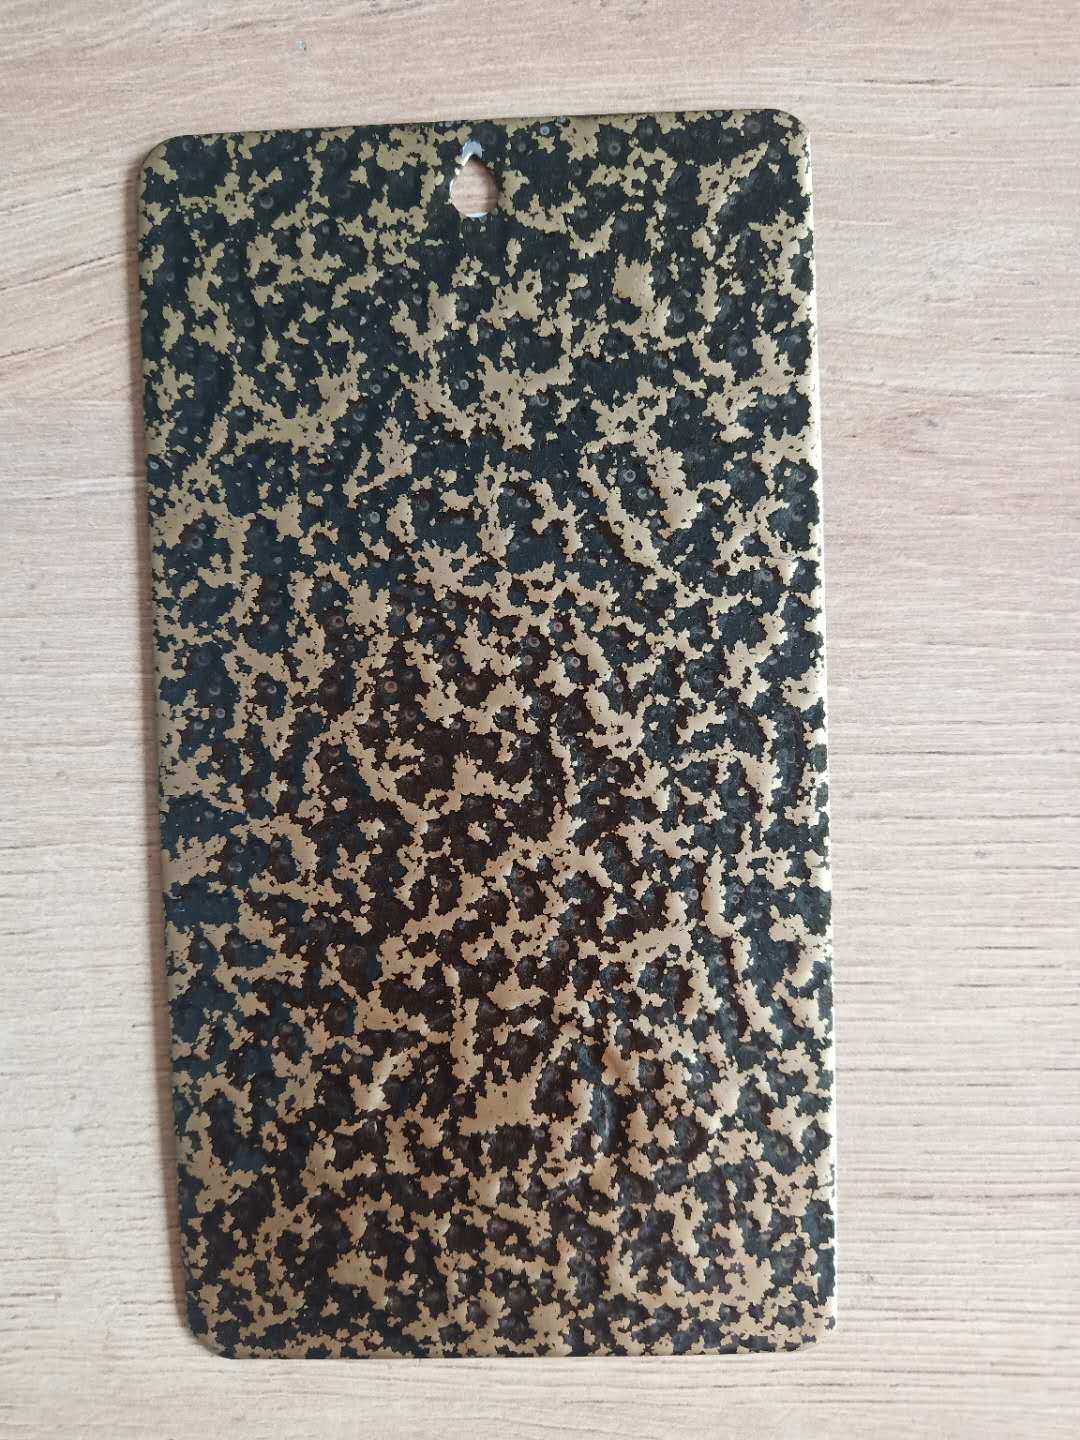 Recubrimiento en polvo de textura de tono de martillo grande negro de cobre antiguo de poliéster